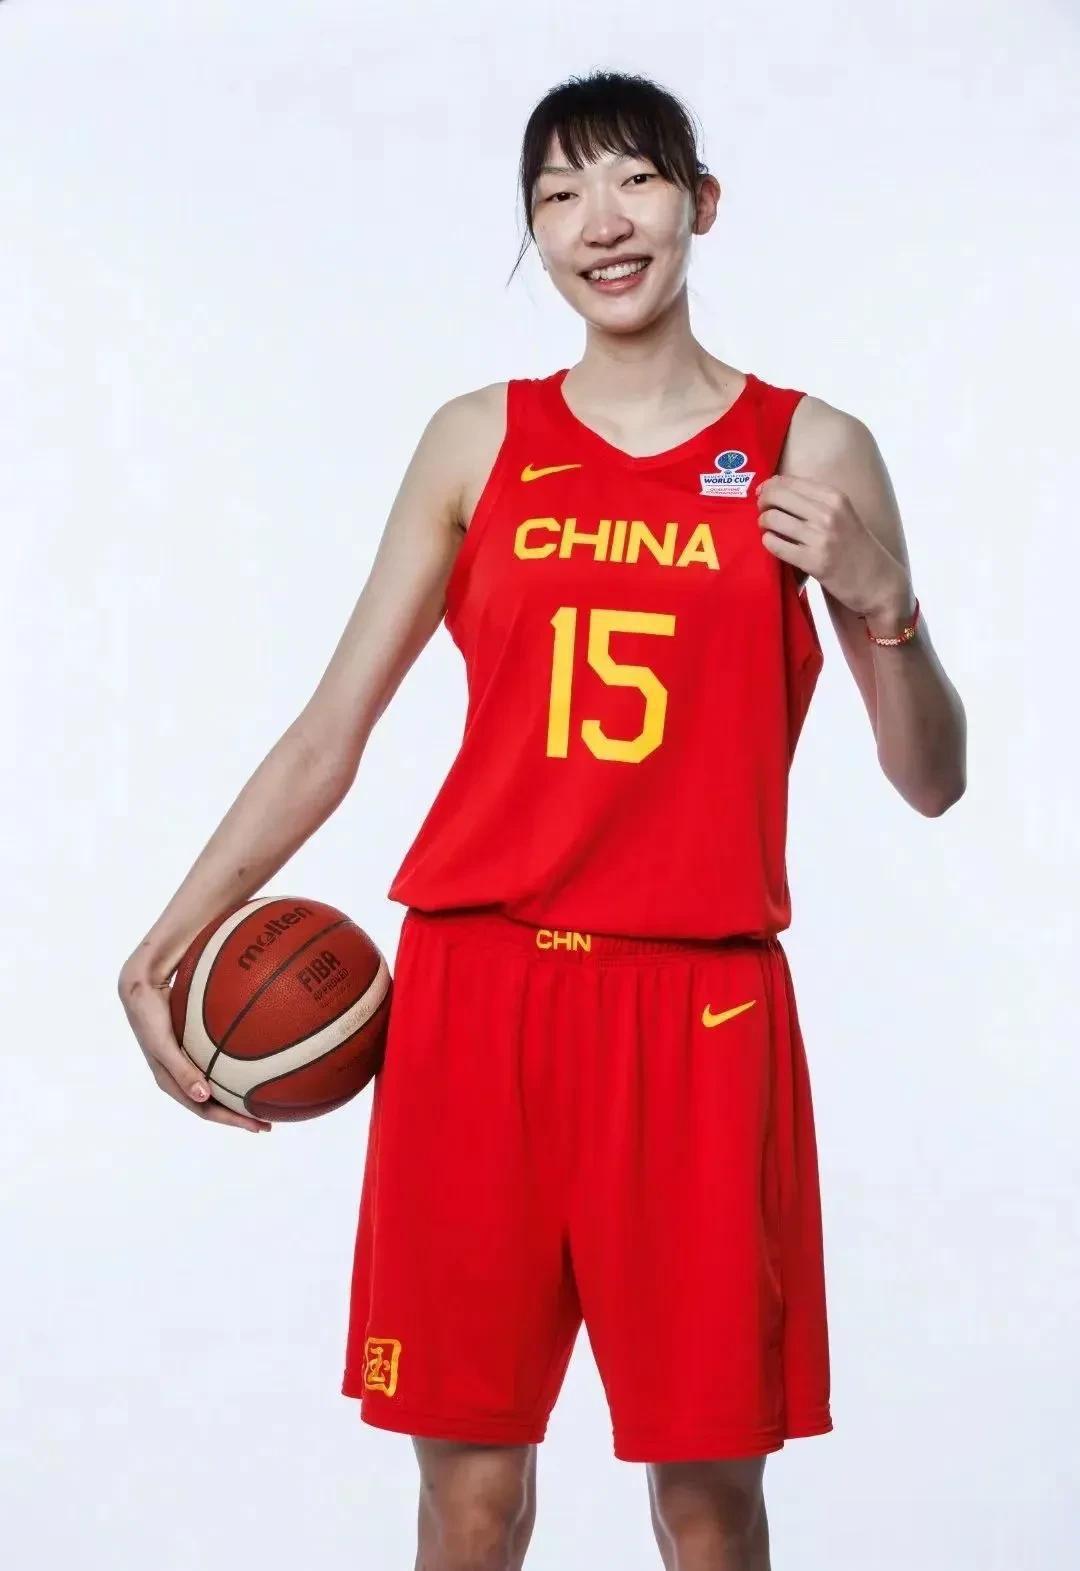 中国十大女篮运动员，你认识几个？

1、郑海霞
2、苗立杰
3、韩旭
4、隋菲菲(2)